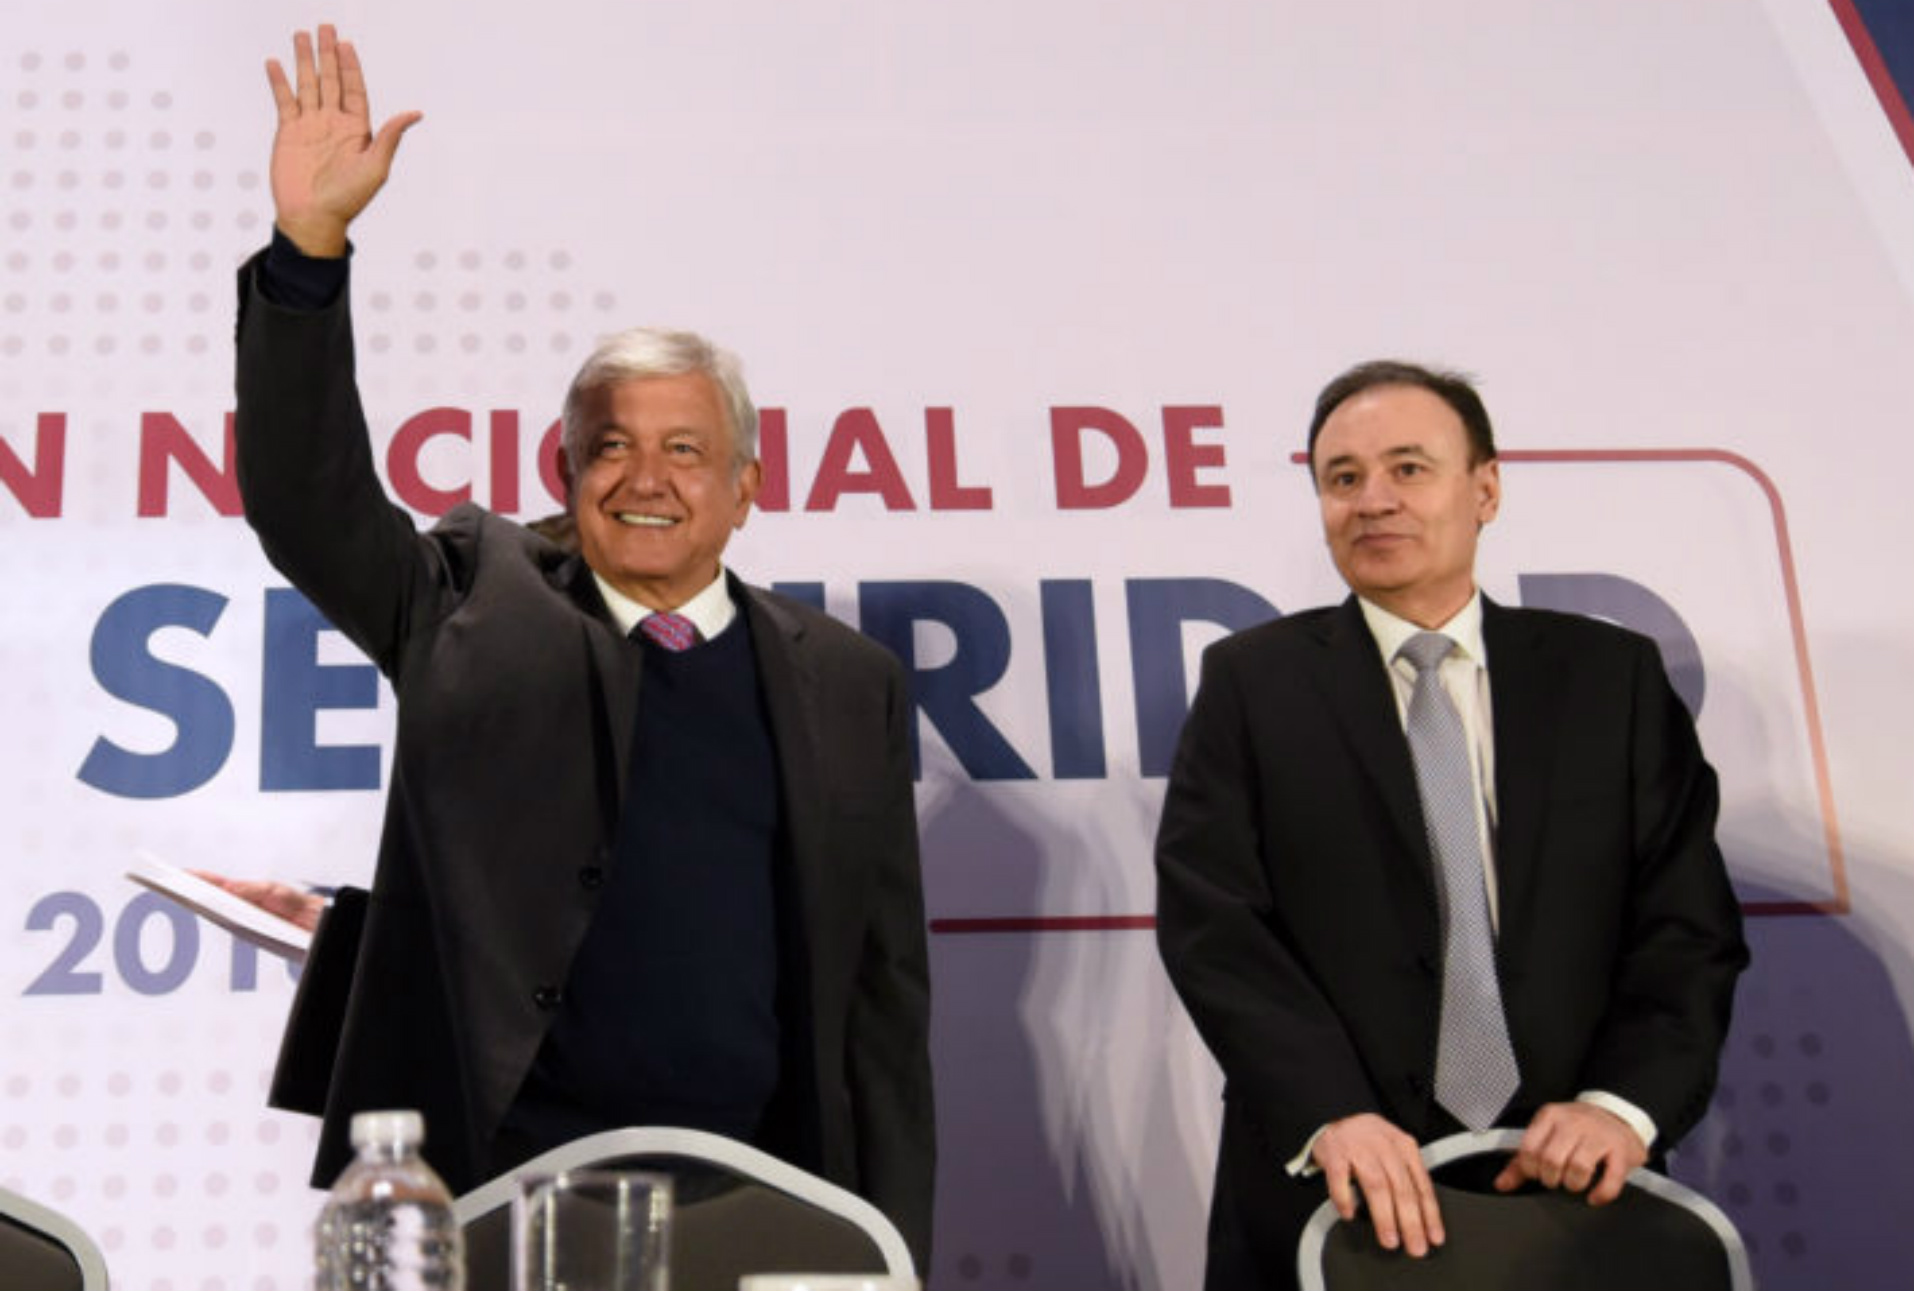 Posicionamiento frente a las declaraciones del Presidente López Obrador y el Secretario Durazo acerca del cese de acciones de vigilancia y espionaje por parte del Estado